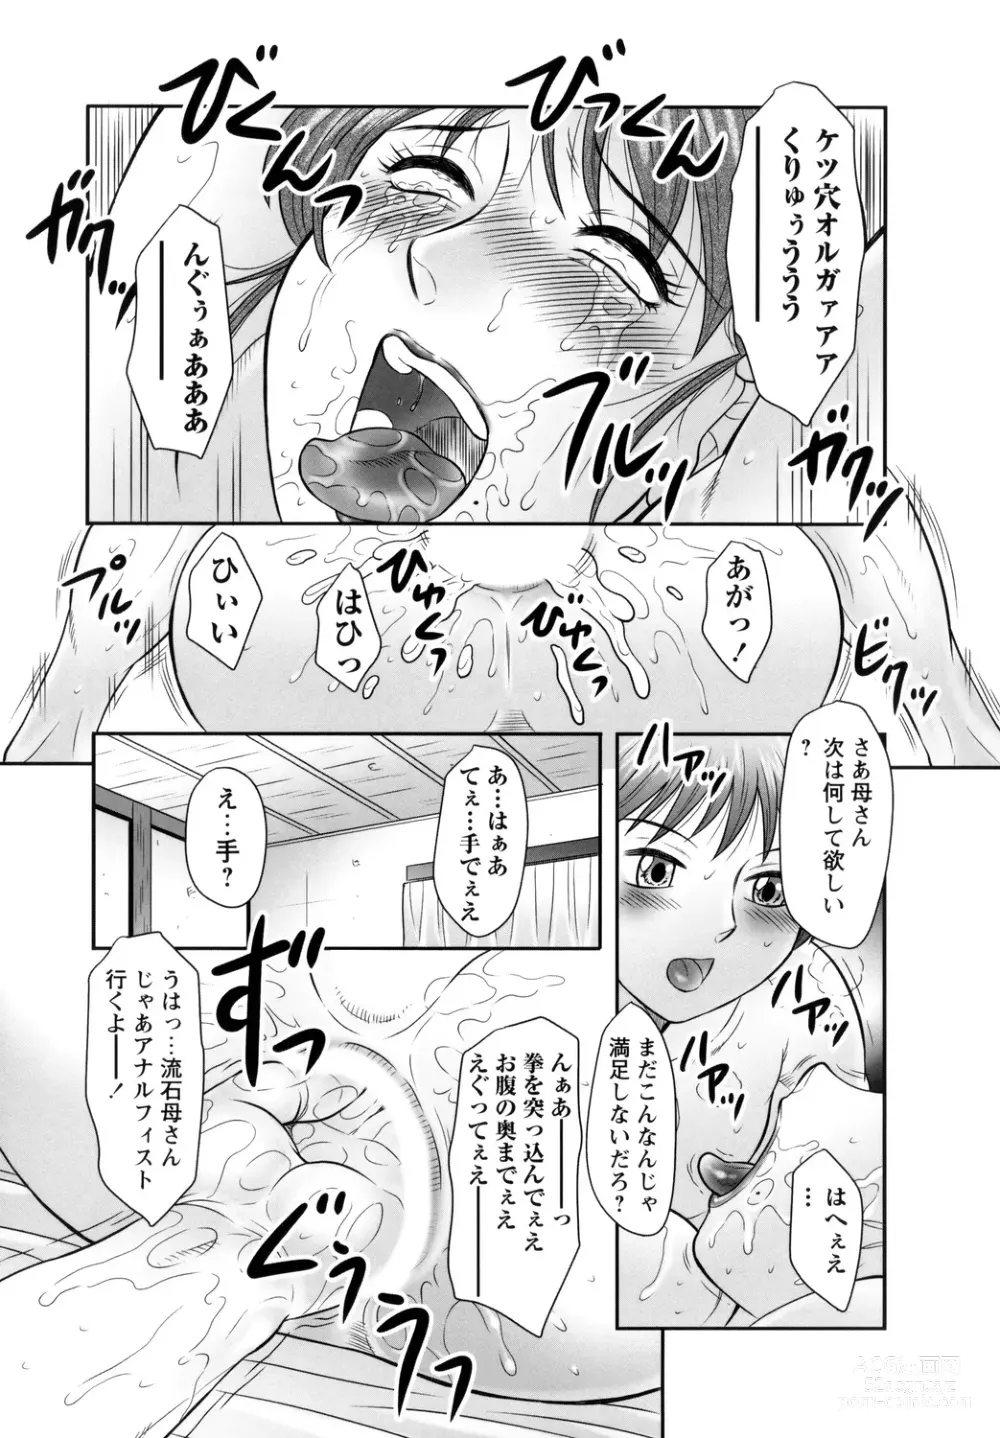 Page 189 of manga Midaragami Seinaru Jukujo ga Mesubuta Ika no Nanika ni Ochiru made